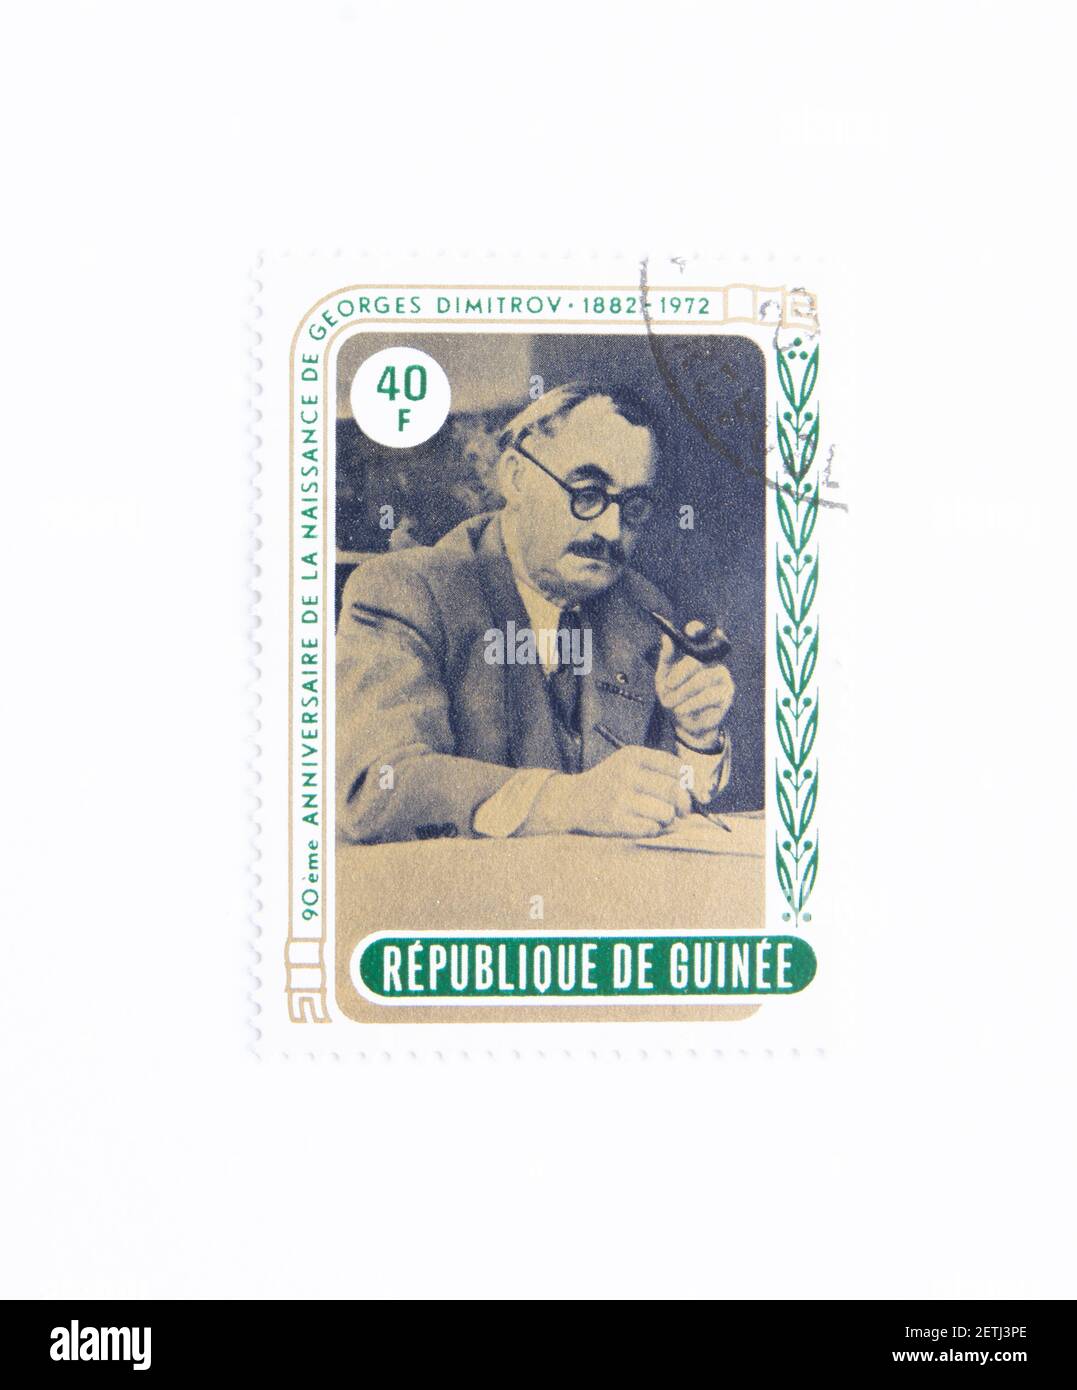 Guinea Republik Briefmarke. Um 1972. 90th. Jahrestag der Geburt Georgi Dimitrovs. Gründer der kommunistischen Herrschaft und erster bulgarischer Ministerpräsident. Stockfoto